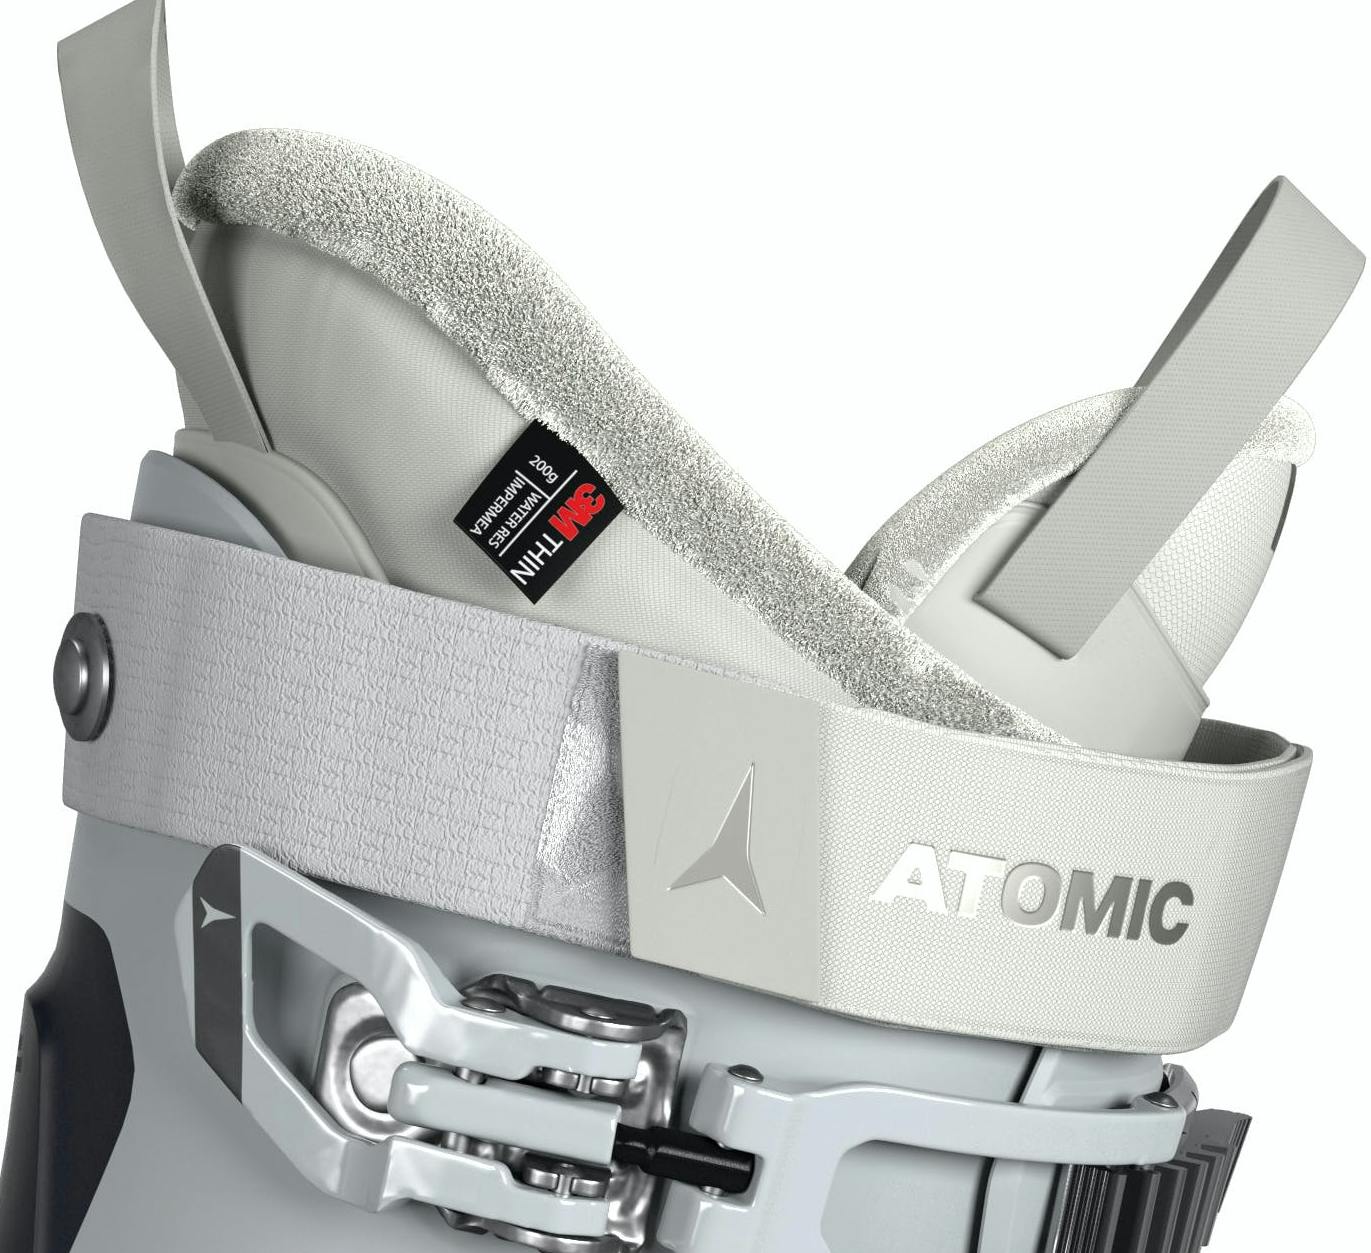 Atomic Hawx Prime 95 W GW Ski Boots · Women's · 2023